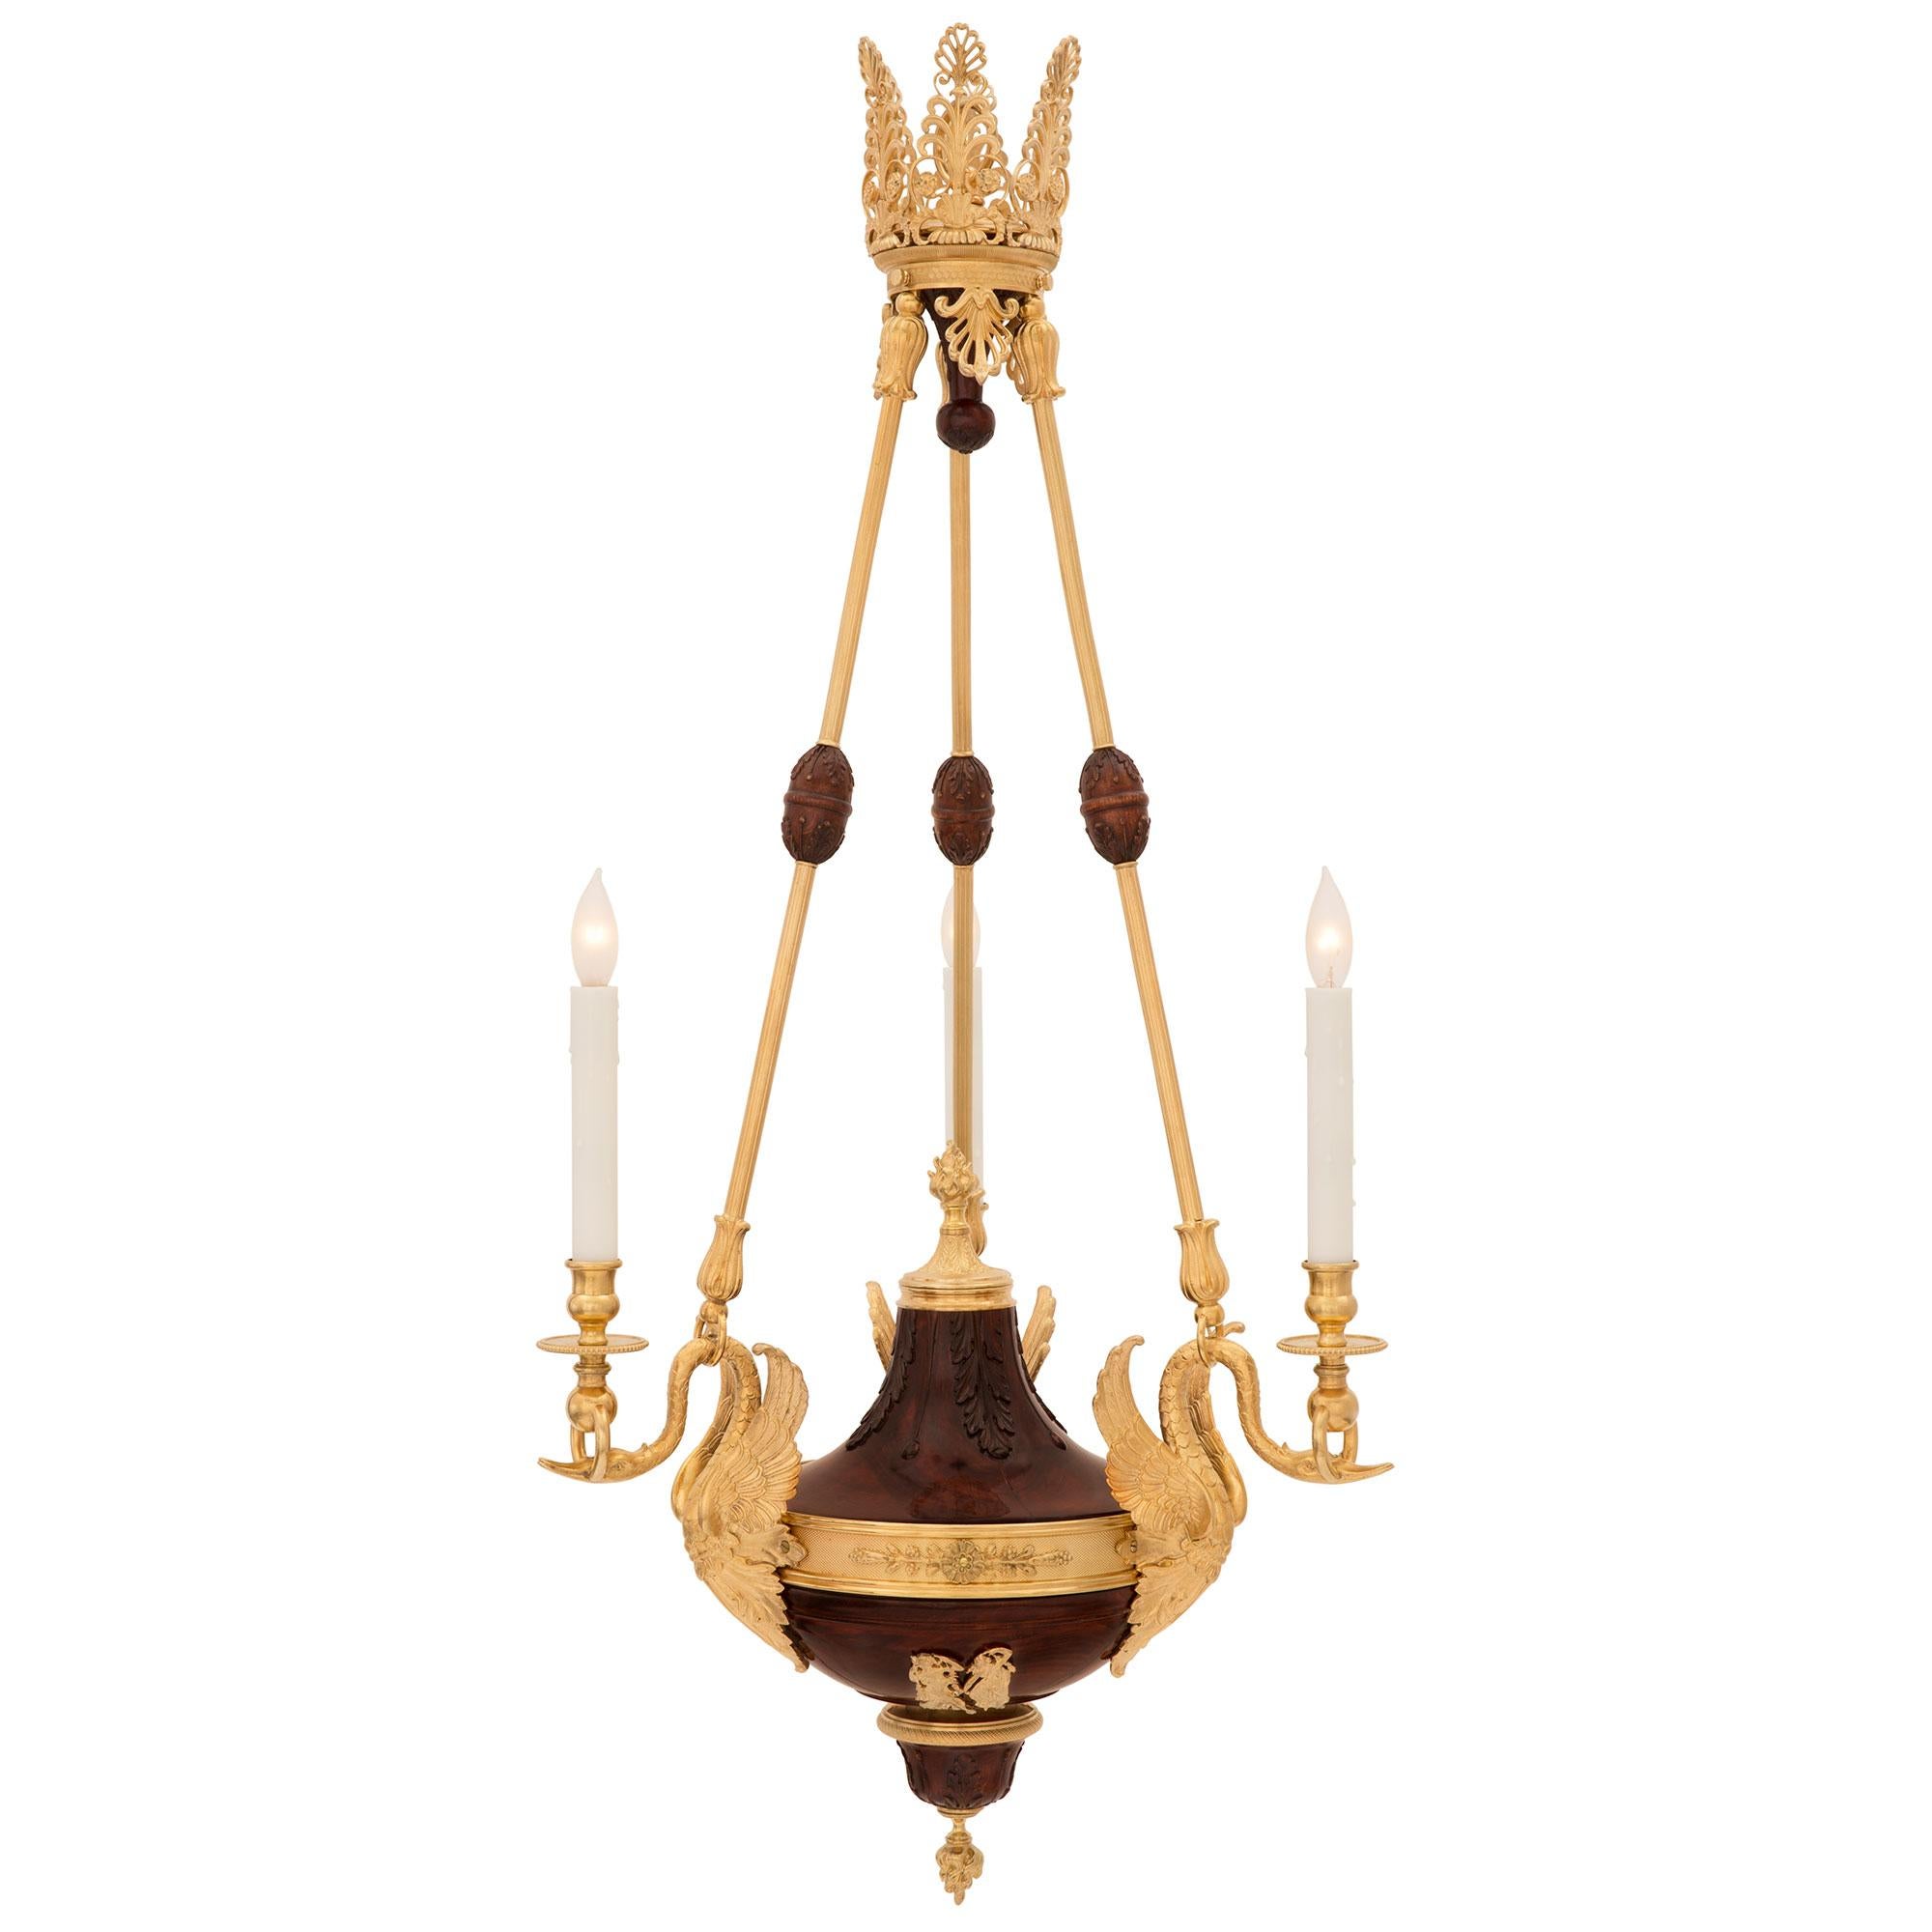 Exceptionnel lustre néo-classique français du XIXe siècle en érable et bronze doré. Le lustre est centré par un fin fleuron inversé inférieur représentant la flamme éternelle parmi des feuilles d'acanthe en érable sculpté et une élégante bande